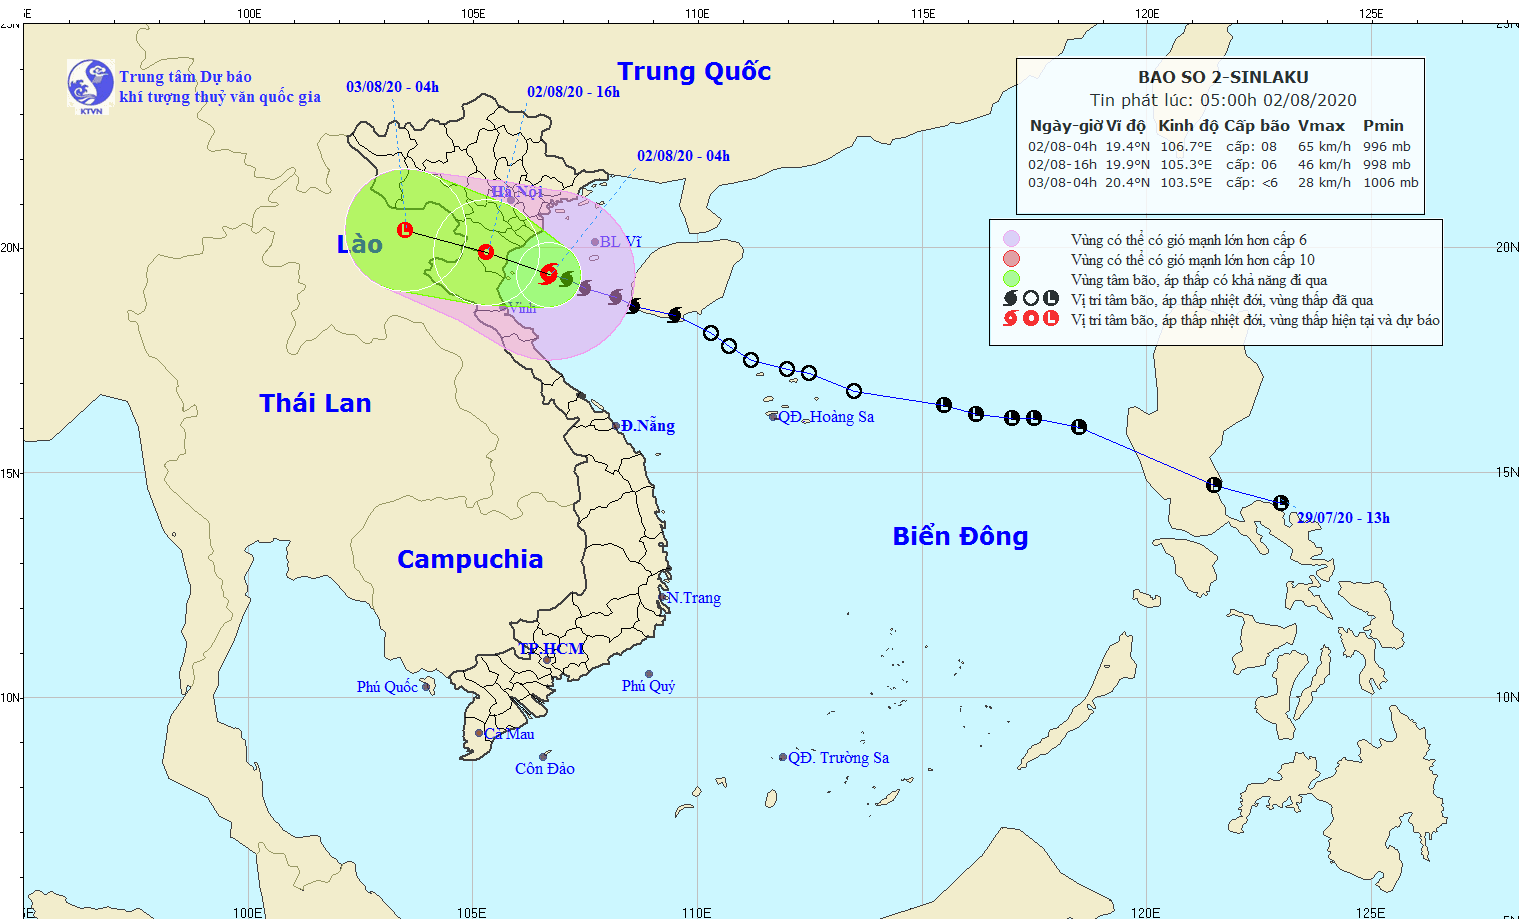 Bão số 2 đi vào đất liền các tỉnh từ Ninh Bình đến Nghệ A, suy yếu dần thành áp thấp